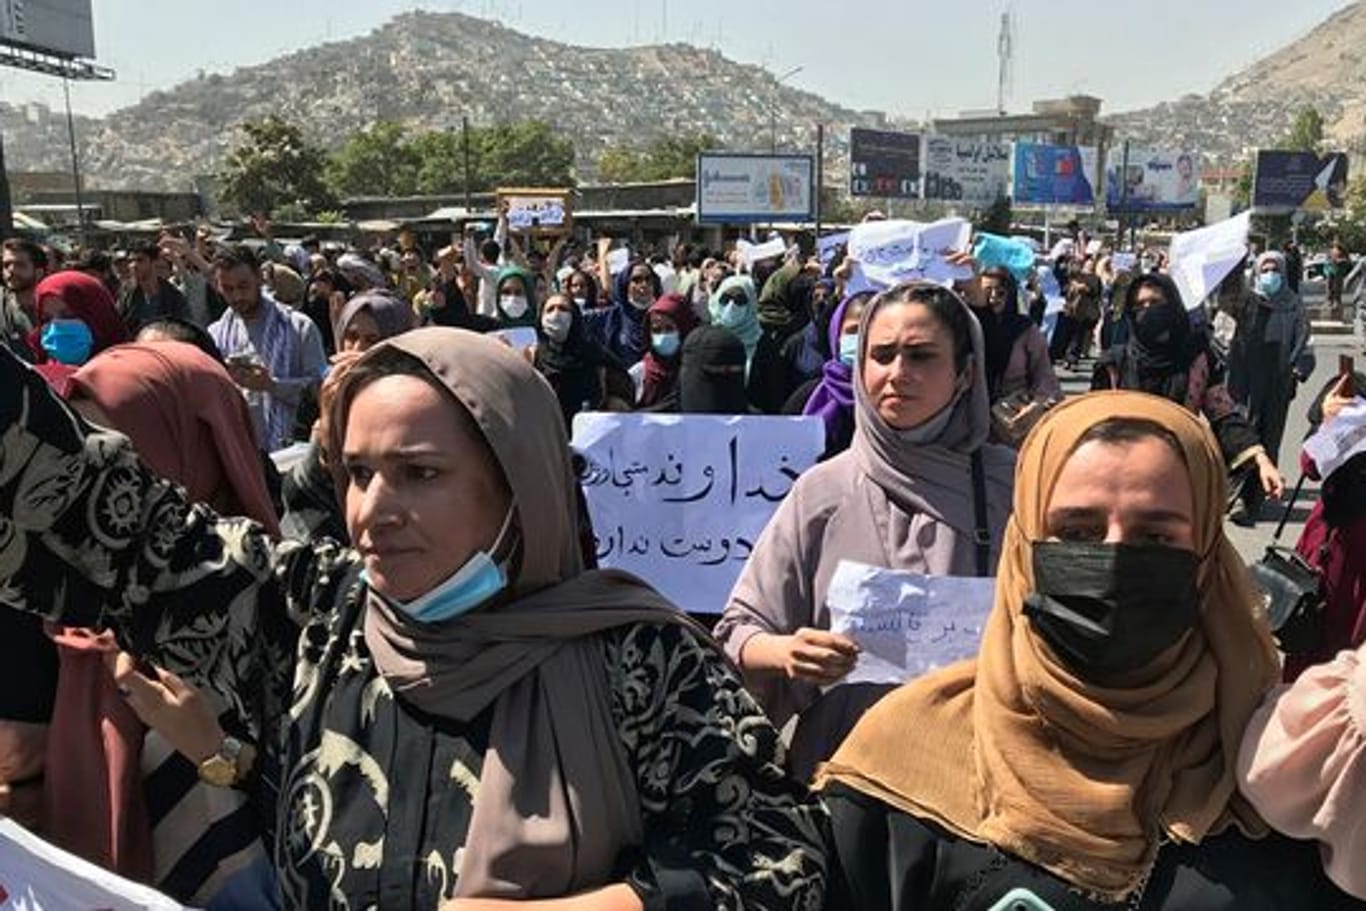 Afghanische Frauen bei einer Anti-Pakistan-Demonstration in der Nähe der pakistanischen Botschaft.